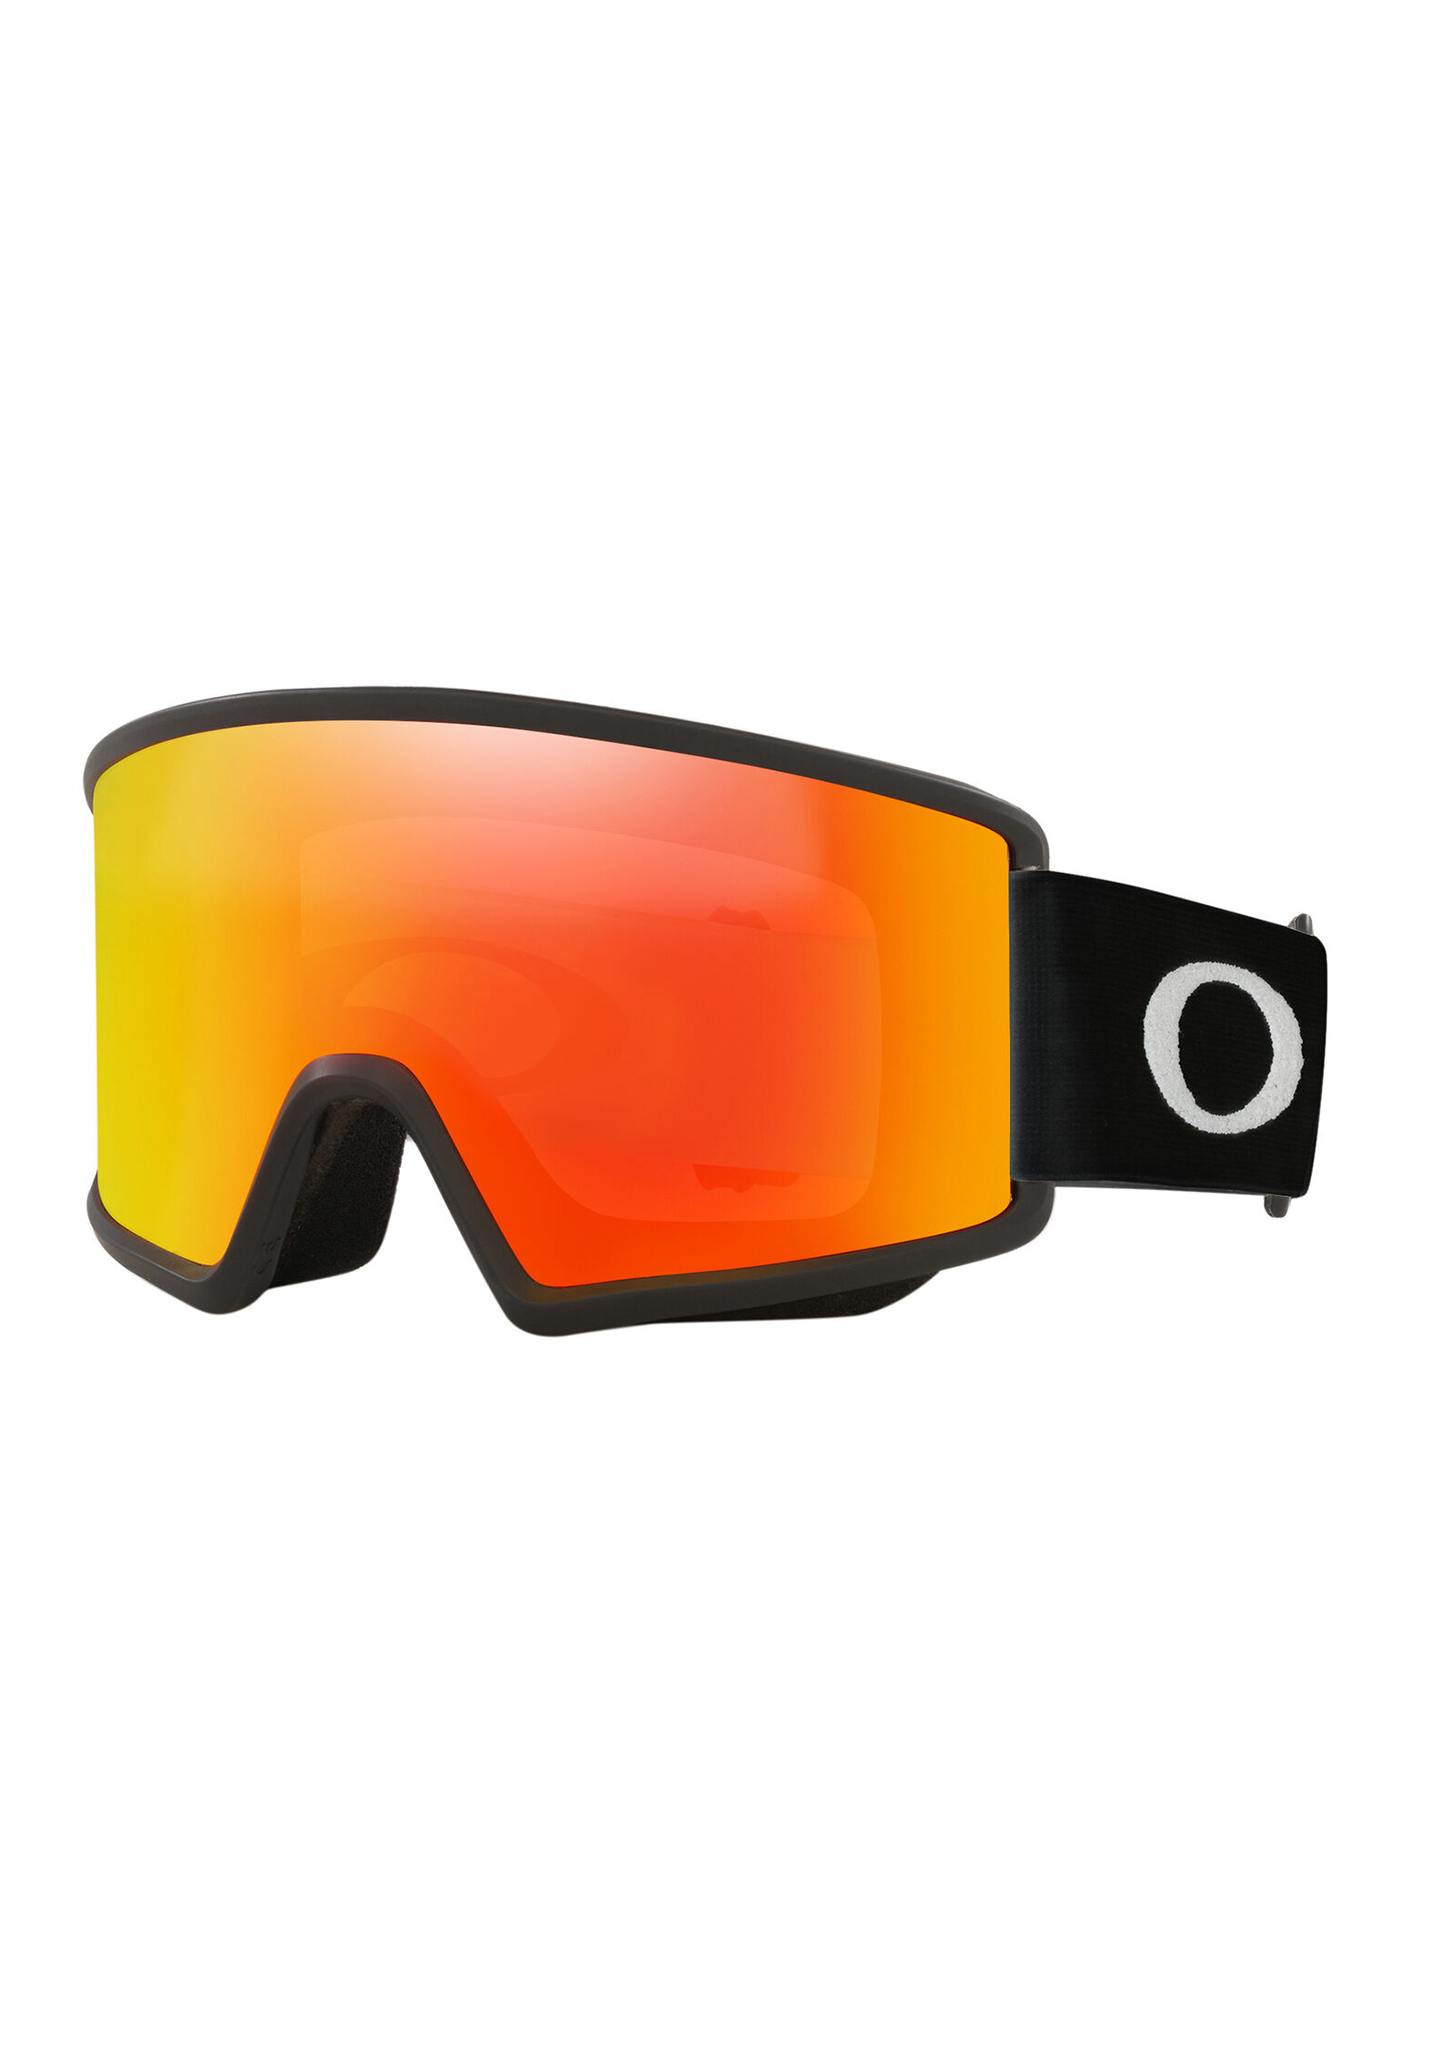 Oakley Target Line S Snowboardbrillen mattschwarz/feueriridium One Size